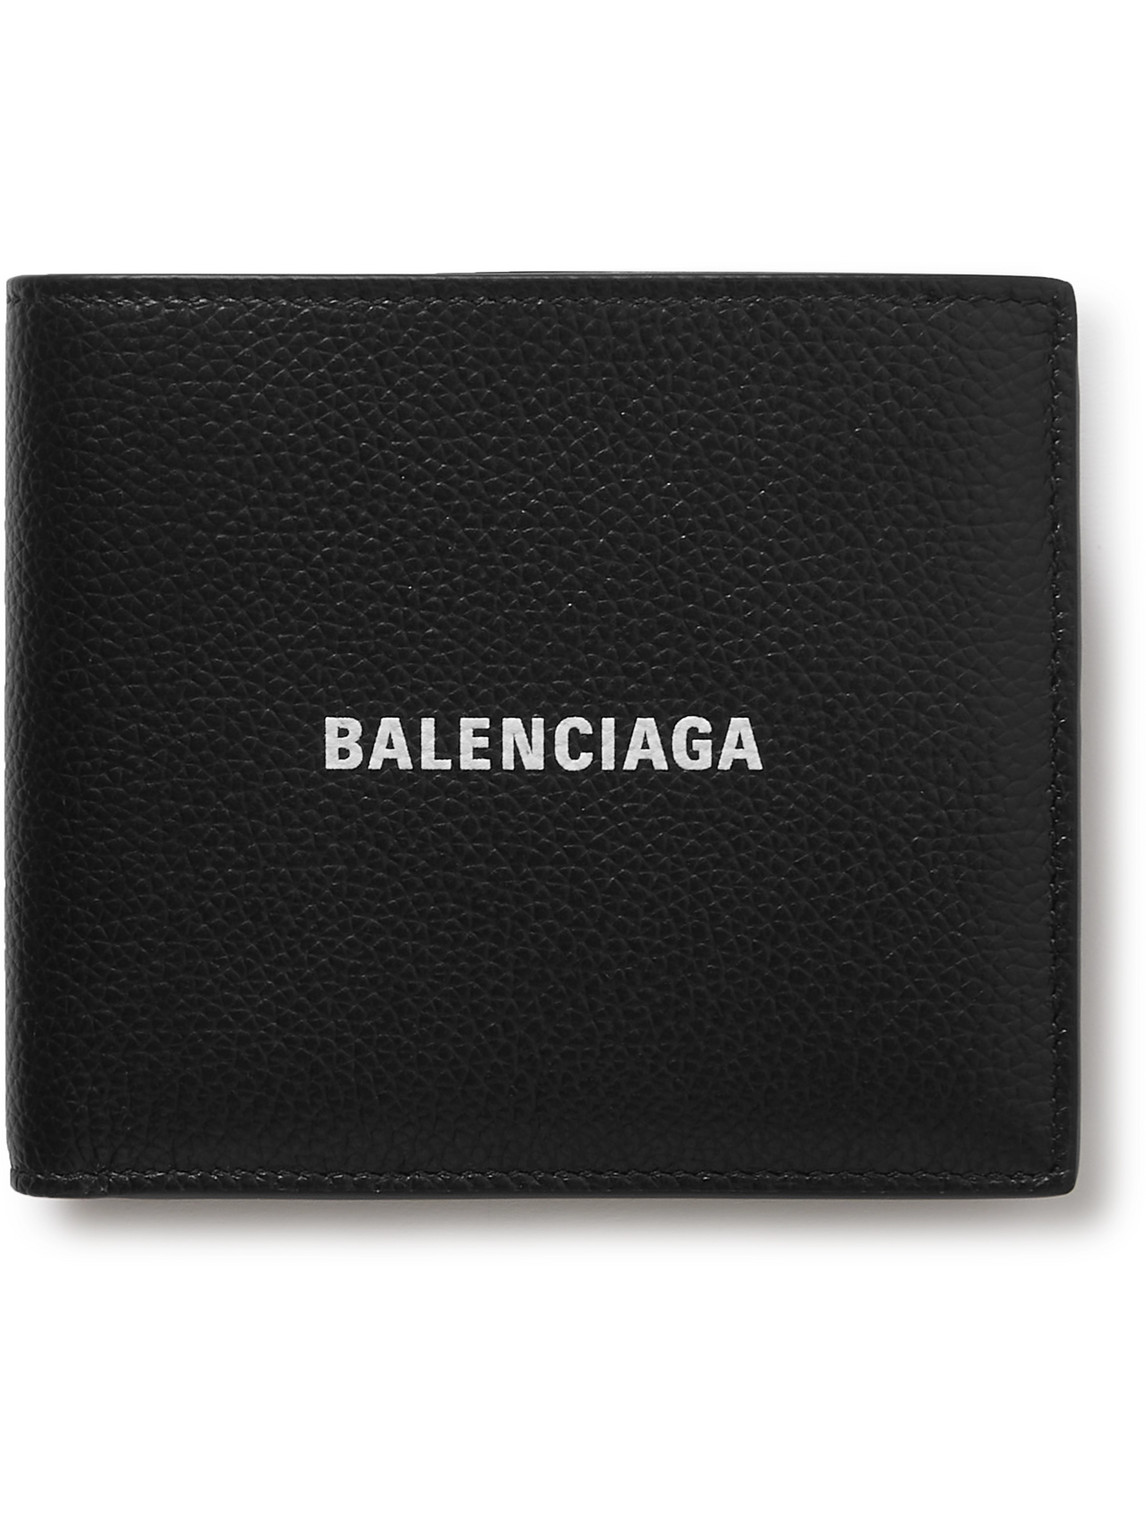 Balenciaga - Logo-Print Full-Grain Leather Billfold Wallet - Men - Black von Balenciaga